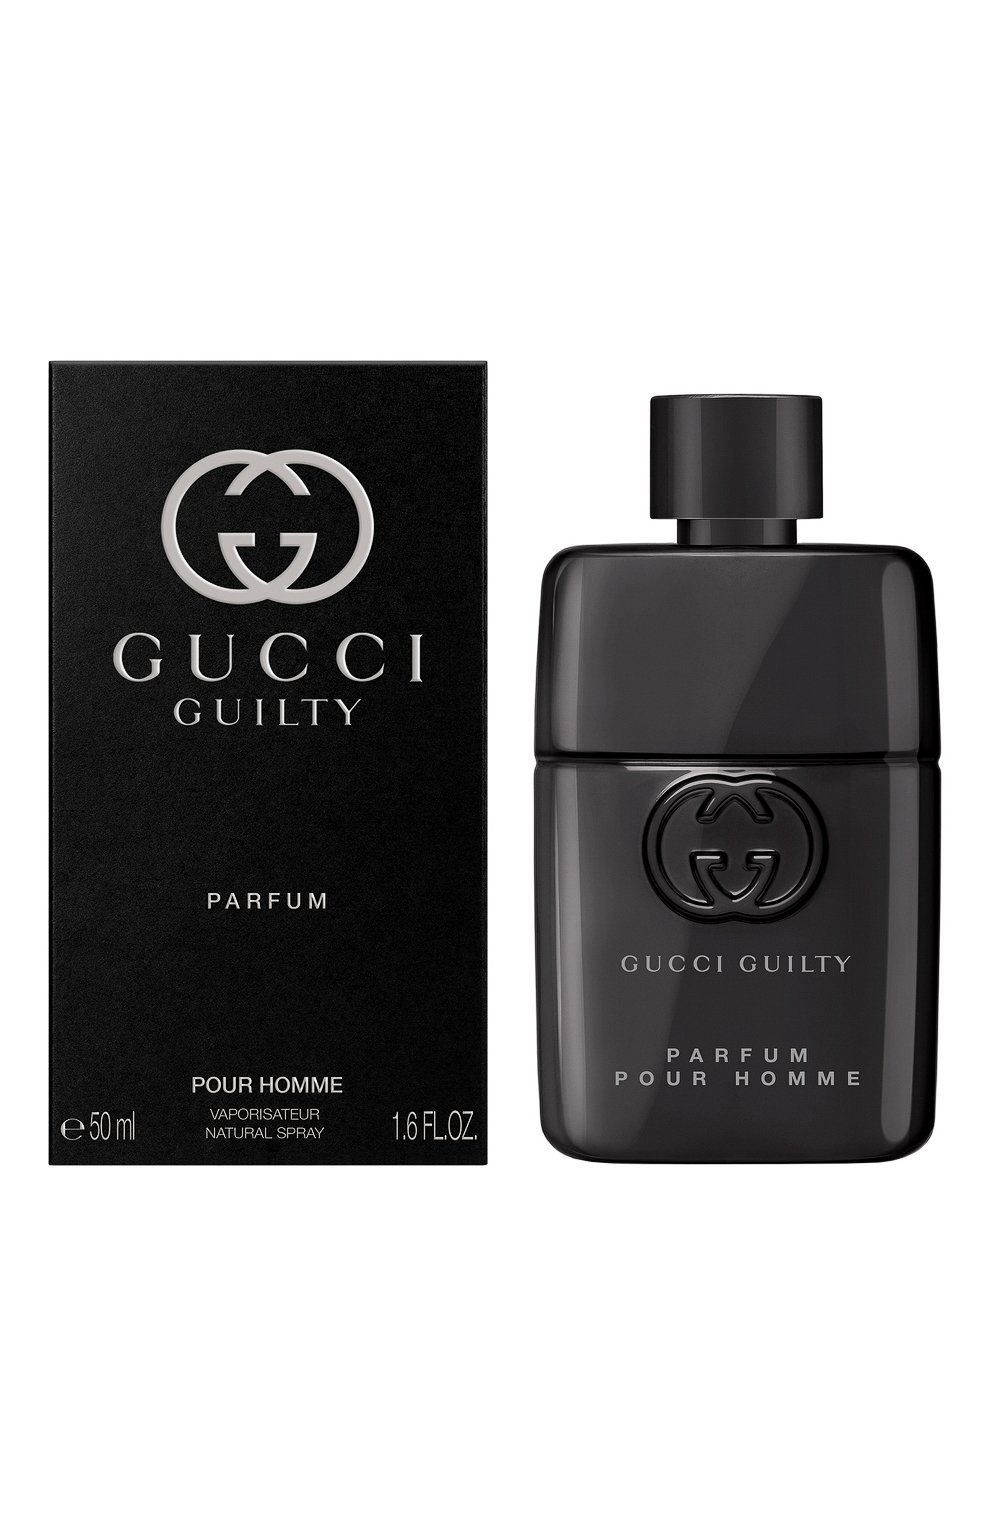 Gucci guilty pour homme 90 мл. Gucci guilty Parfum pour homme. Gucci guilty pour homme мужской. Gucci guilty Eau pour homme.